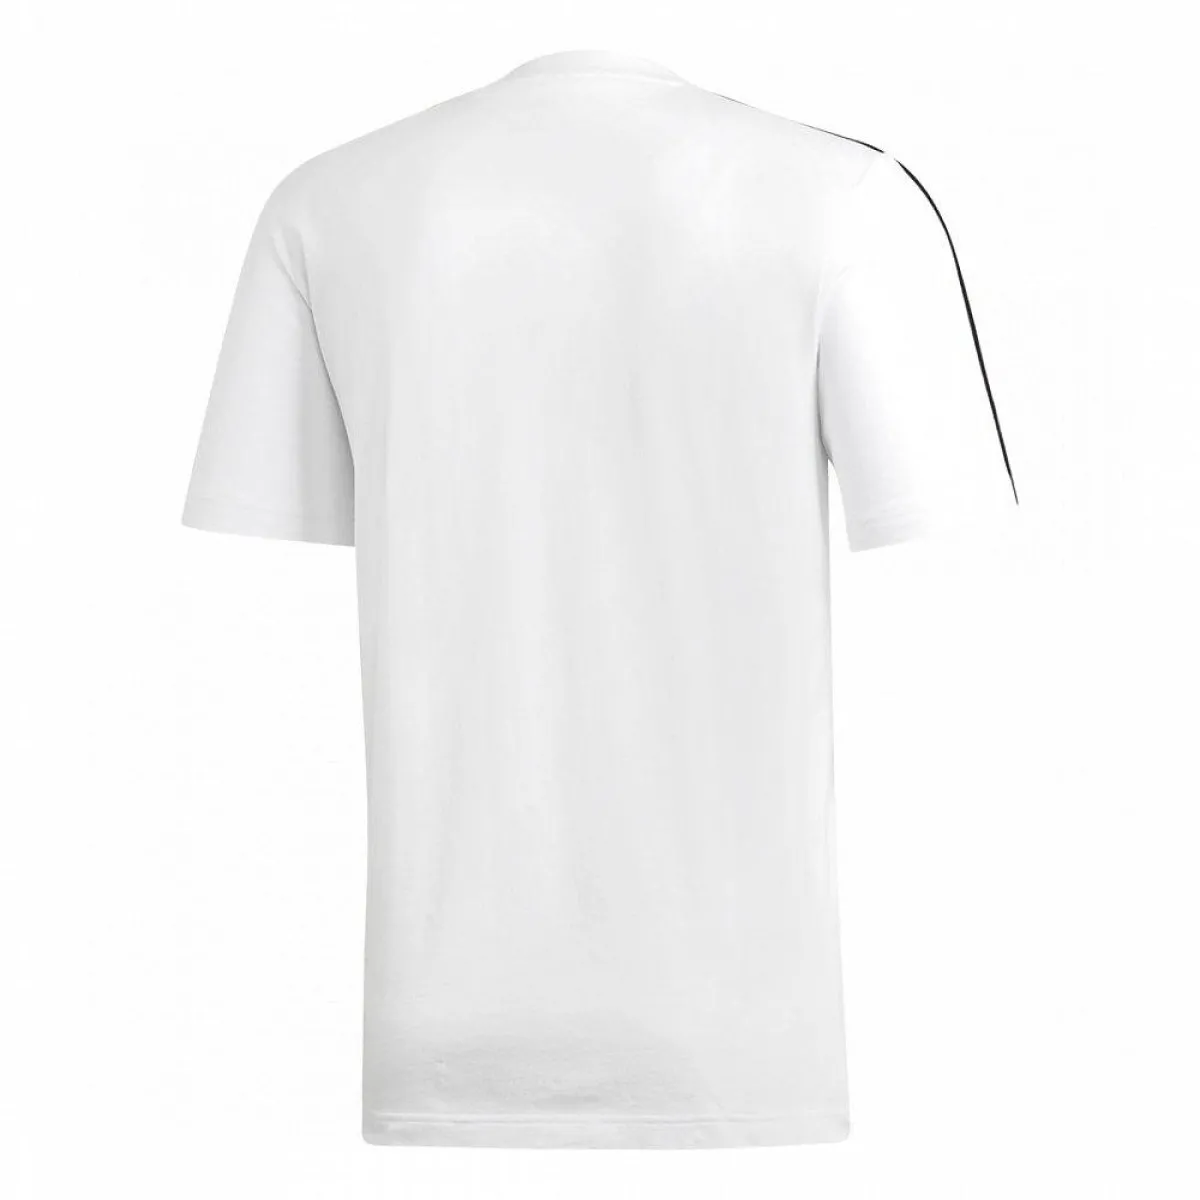 T-shirt adidas blanc avec bandes noires sur les épaules